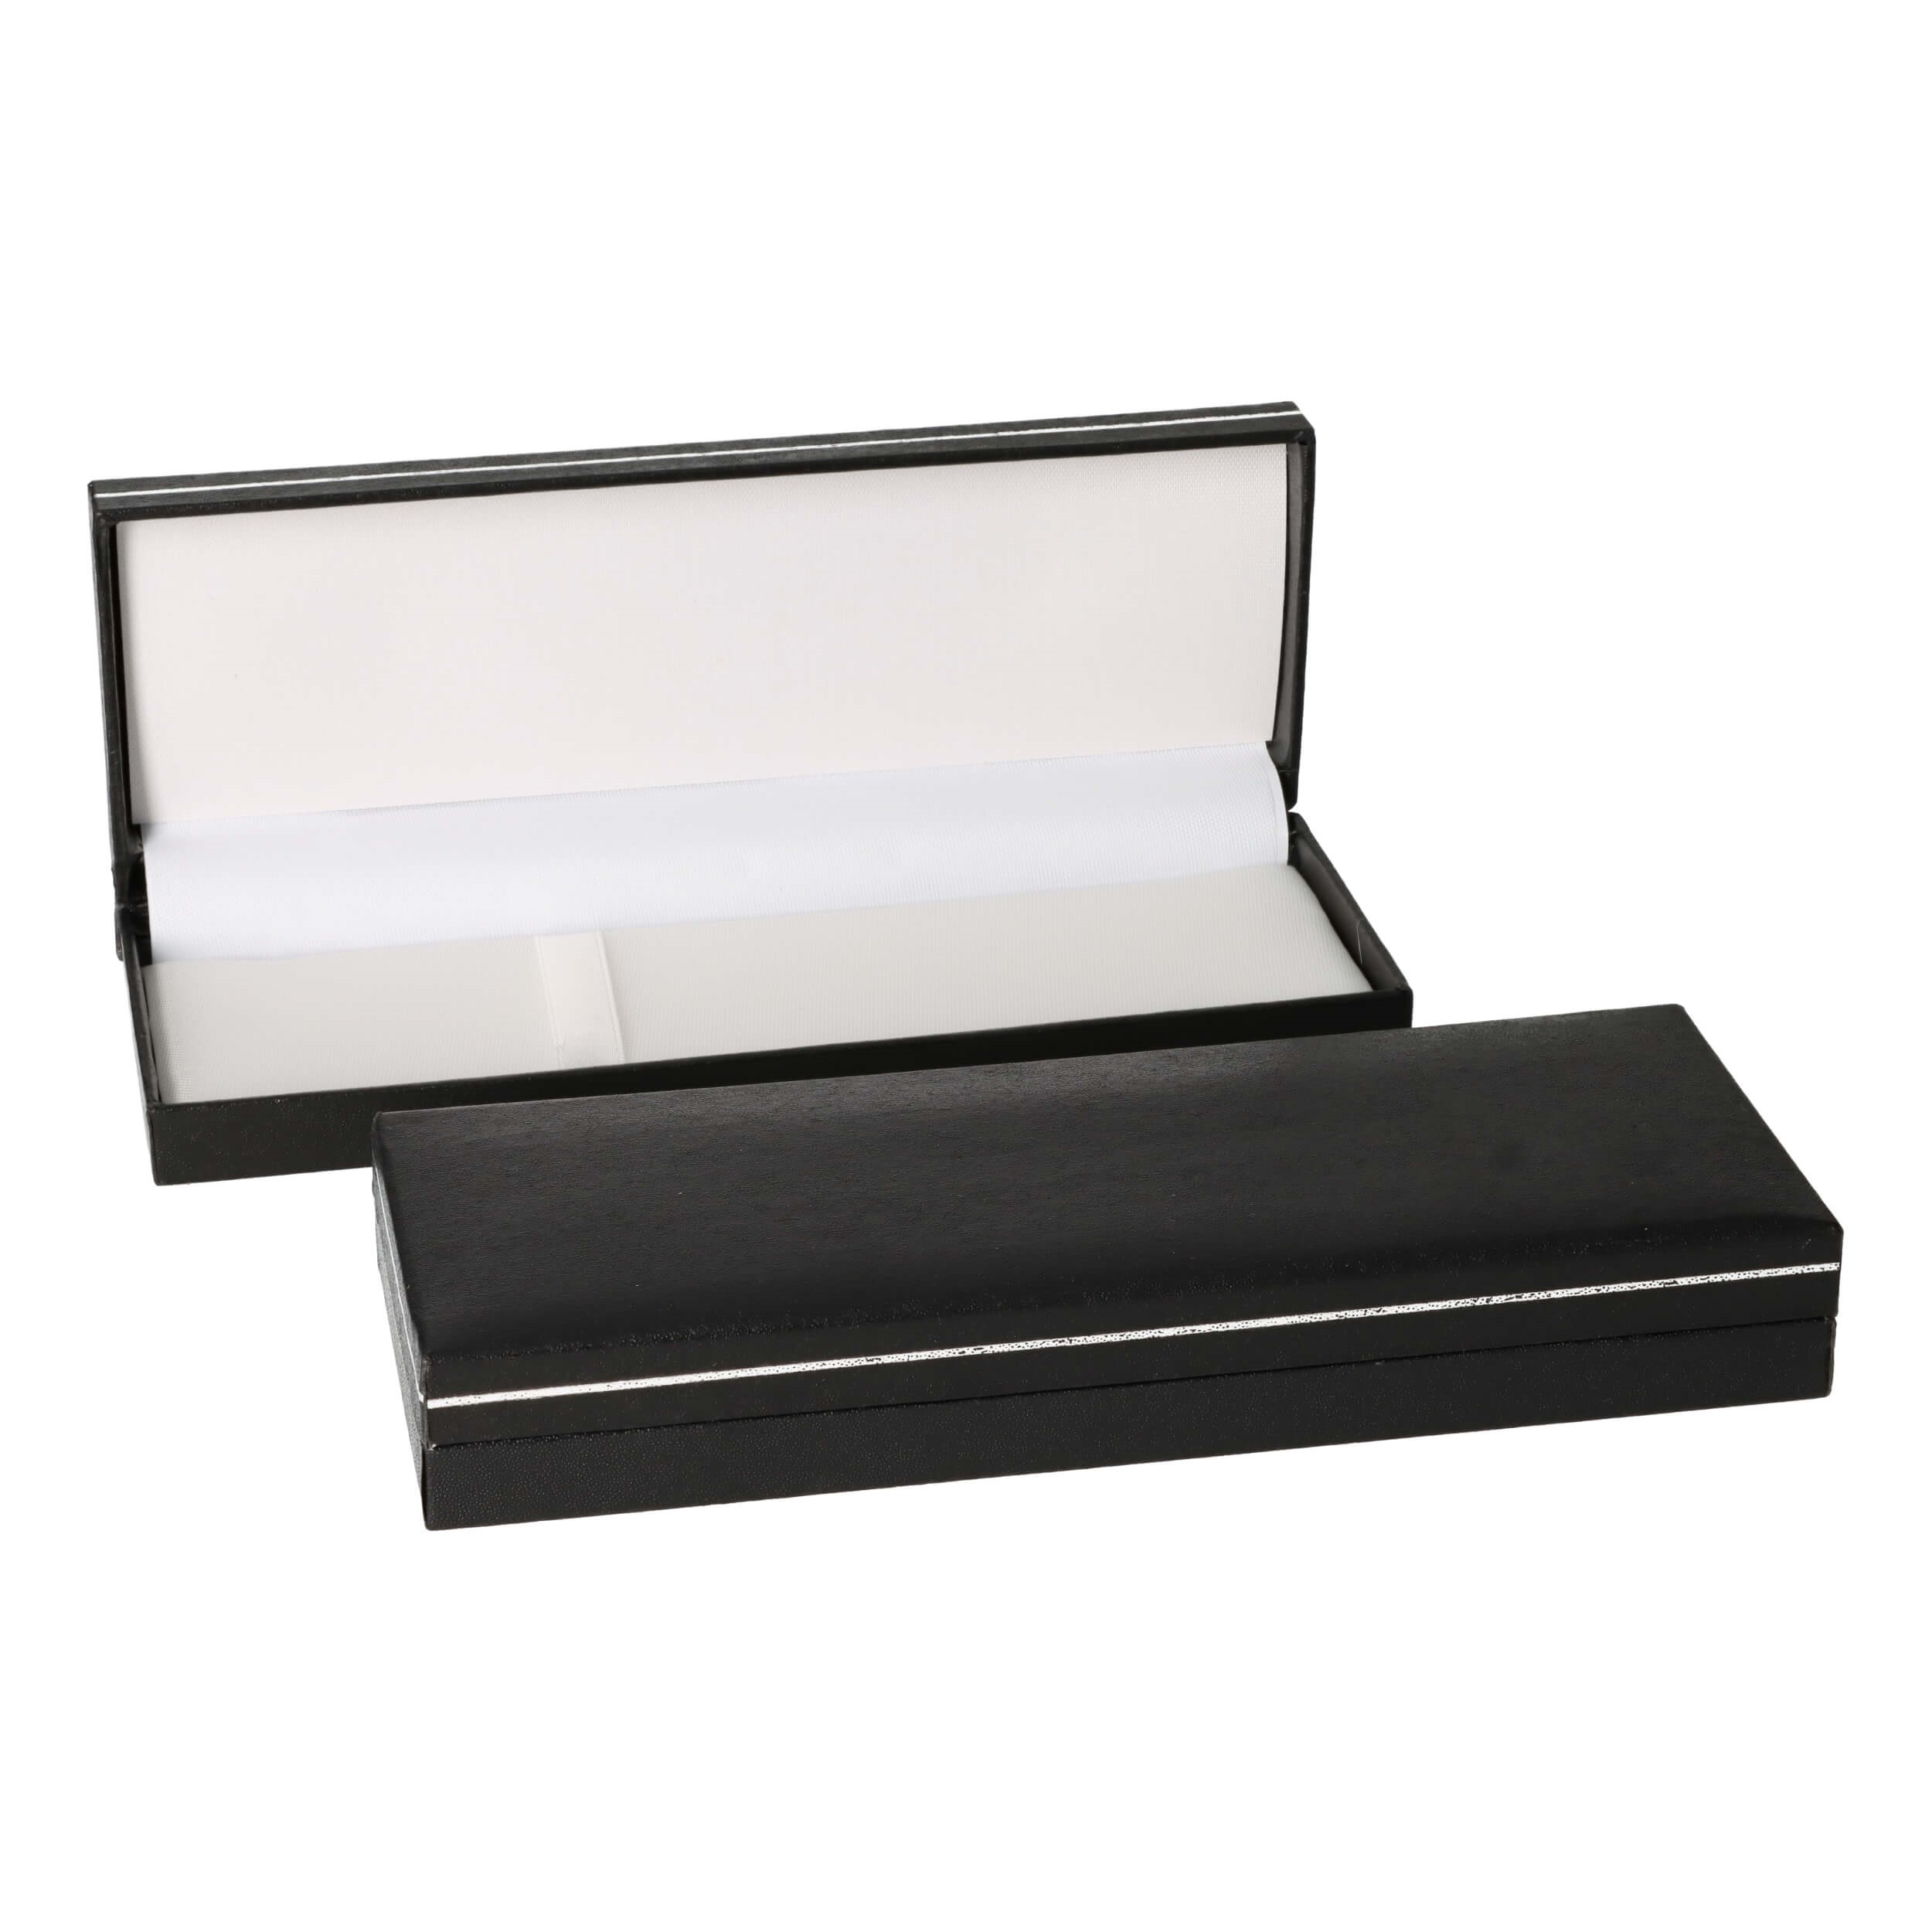 Coffret cadeau stylo noir - aspect cuir carton & papier - 170x62x25mm - Intérieur nylon blanc - 74g poids plume